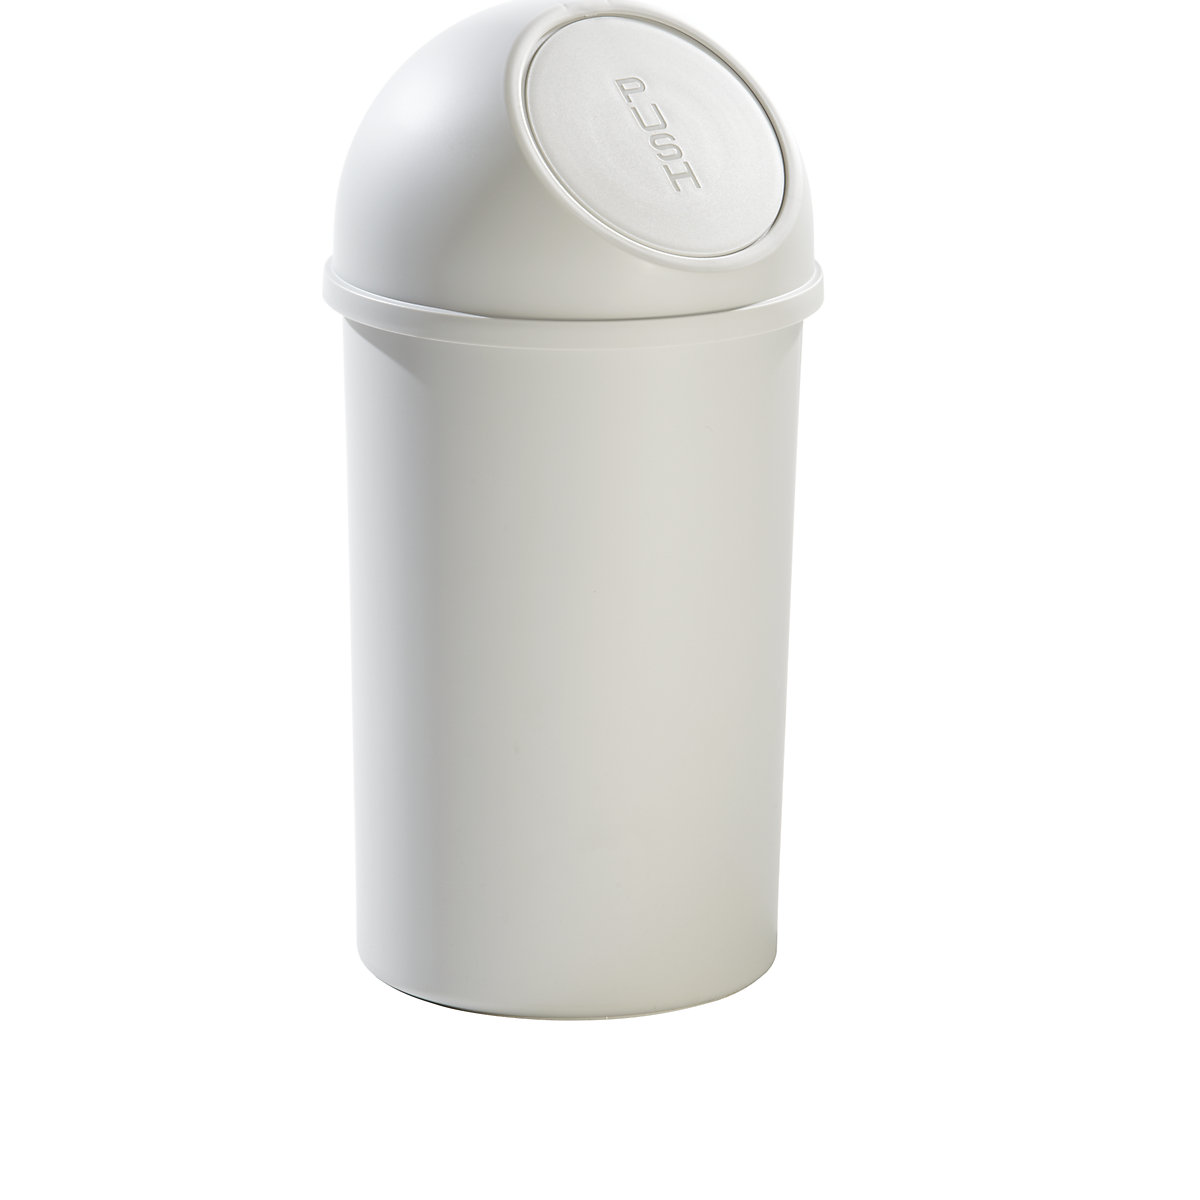 helit – Coș de gunoi cu capac basculant din plastic